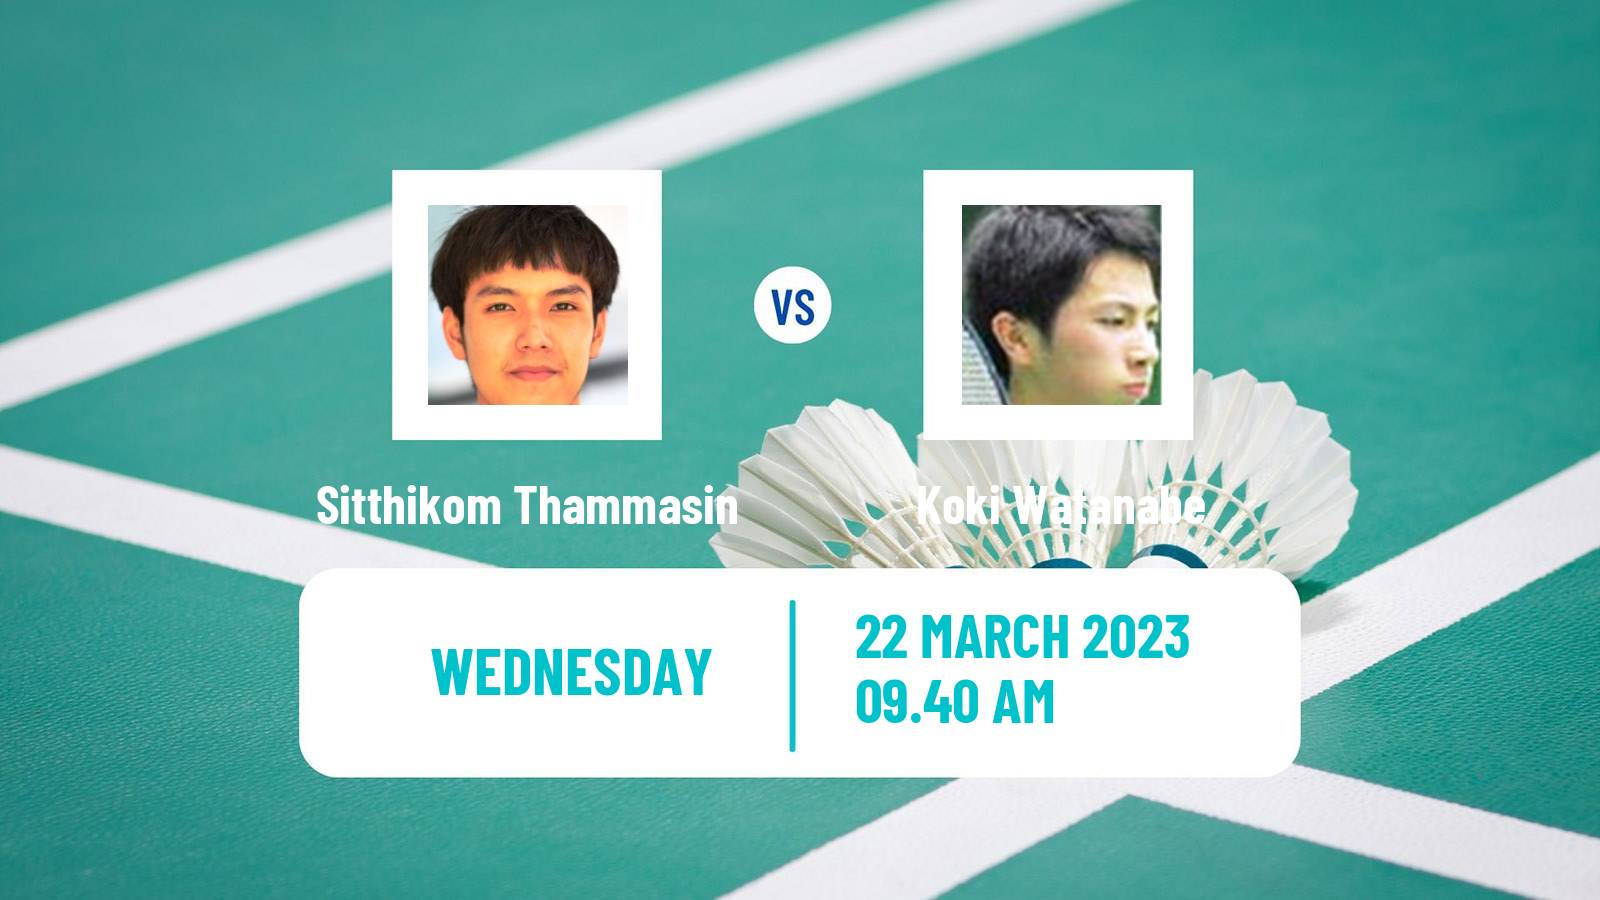 Badminton Badminton Sitthikom Thammasin - Koki Watanabe